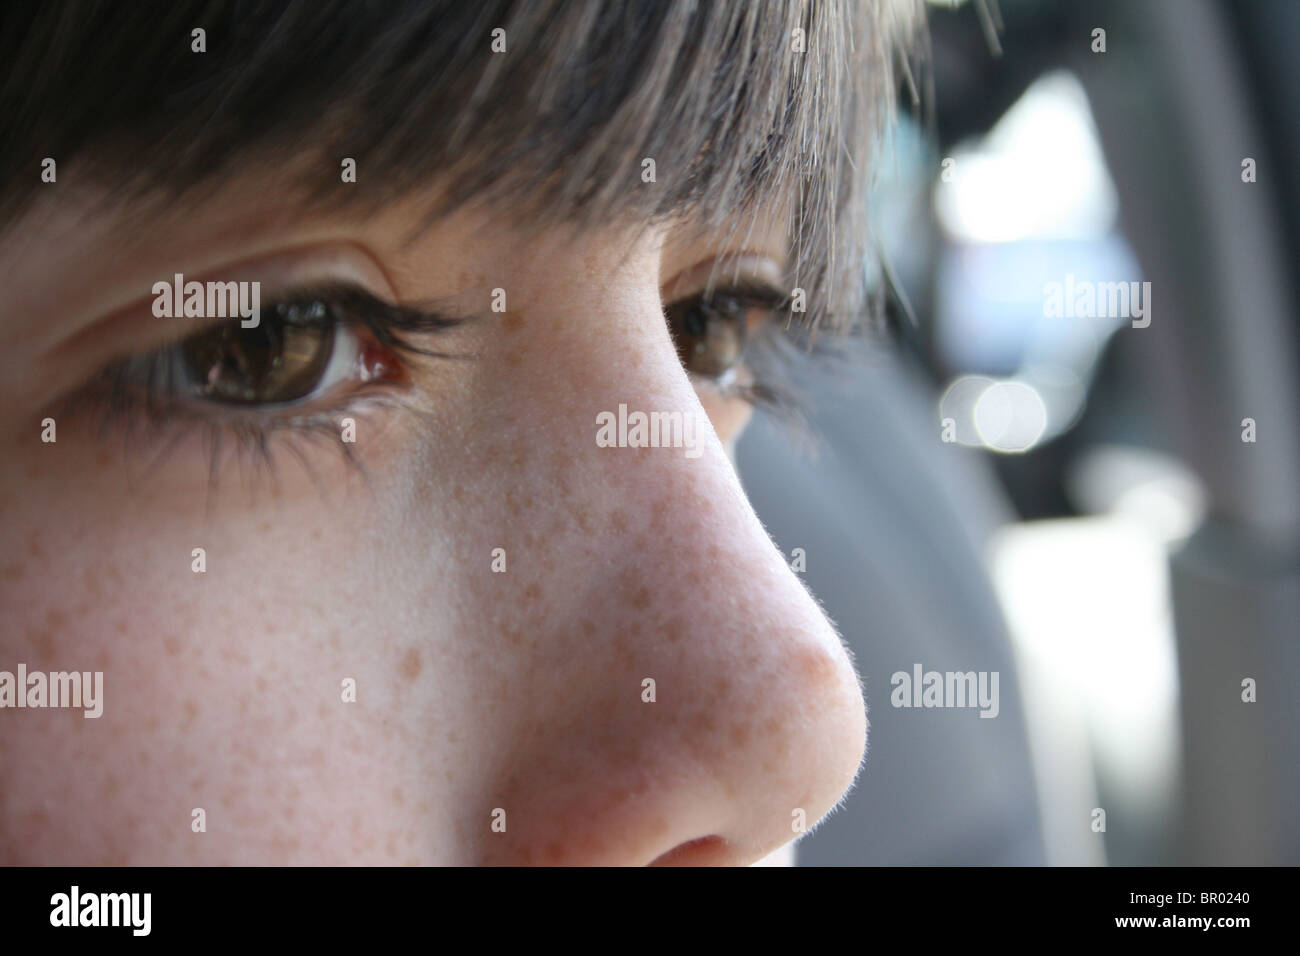 Close-up de un chico de la cara; los ojos de un niño que espera el mundo entero en ellas. Foto de stock